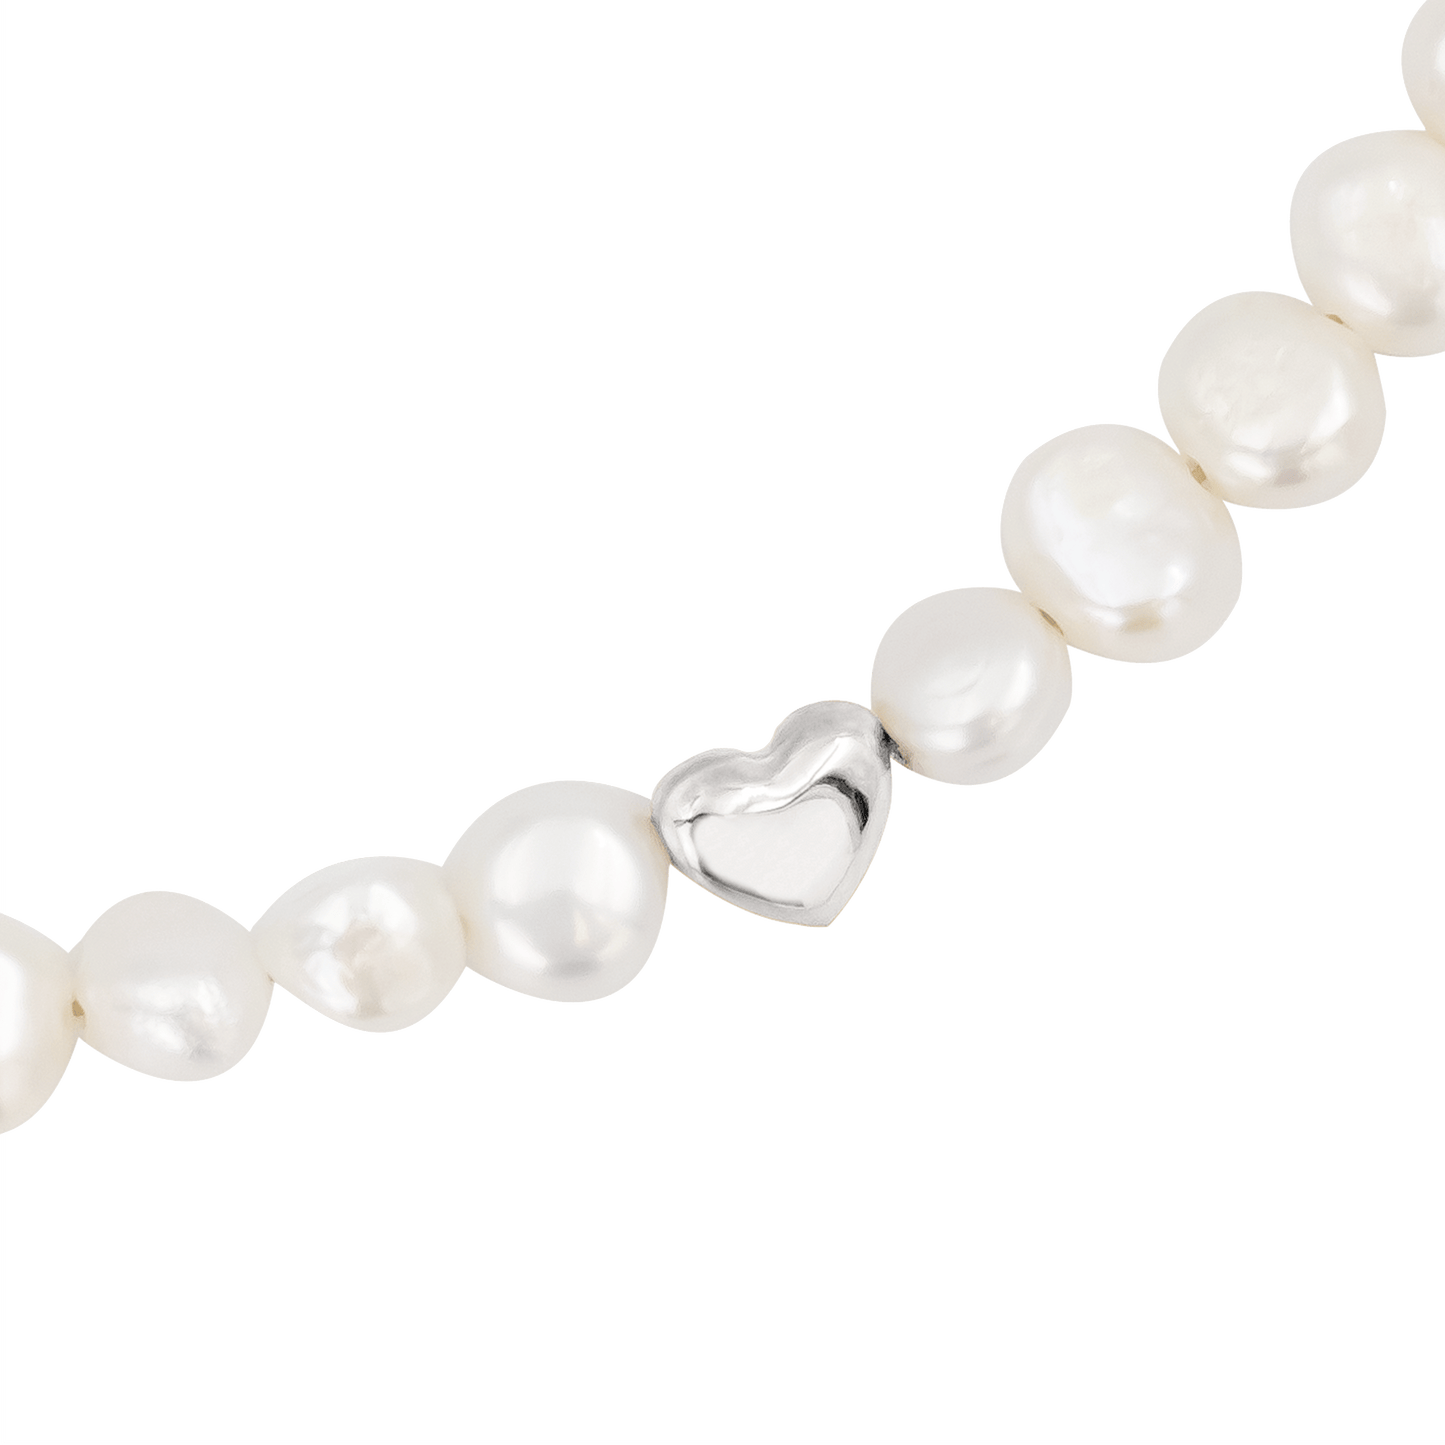 Retro Love Pearl Necklace Silver